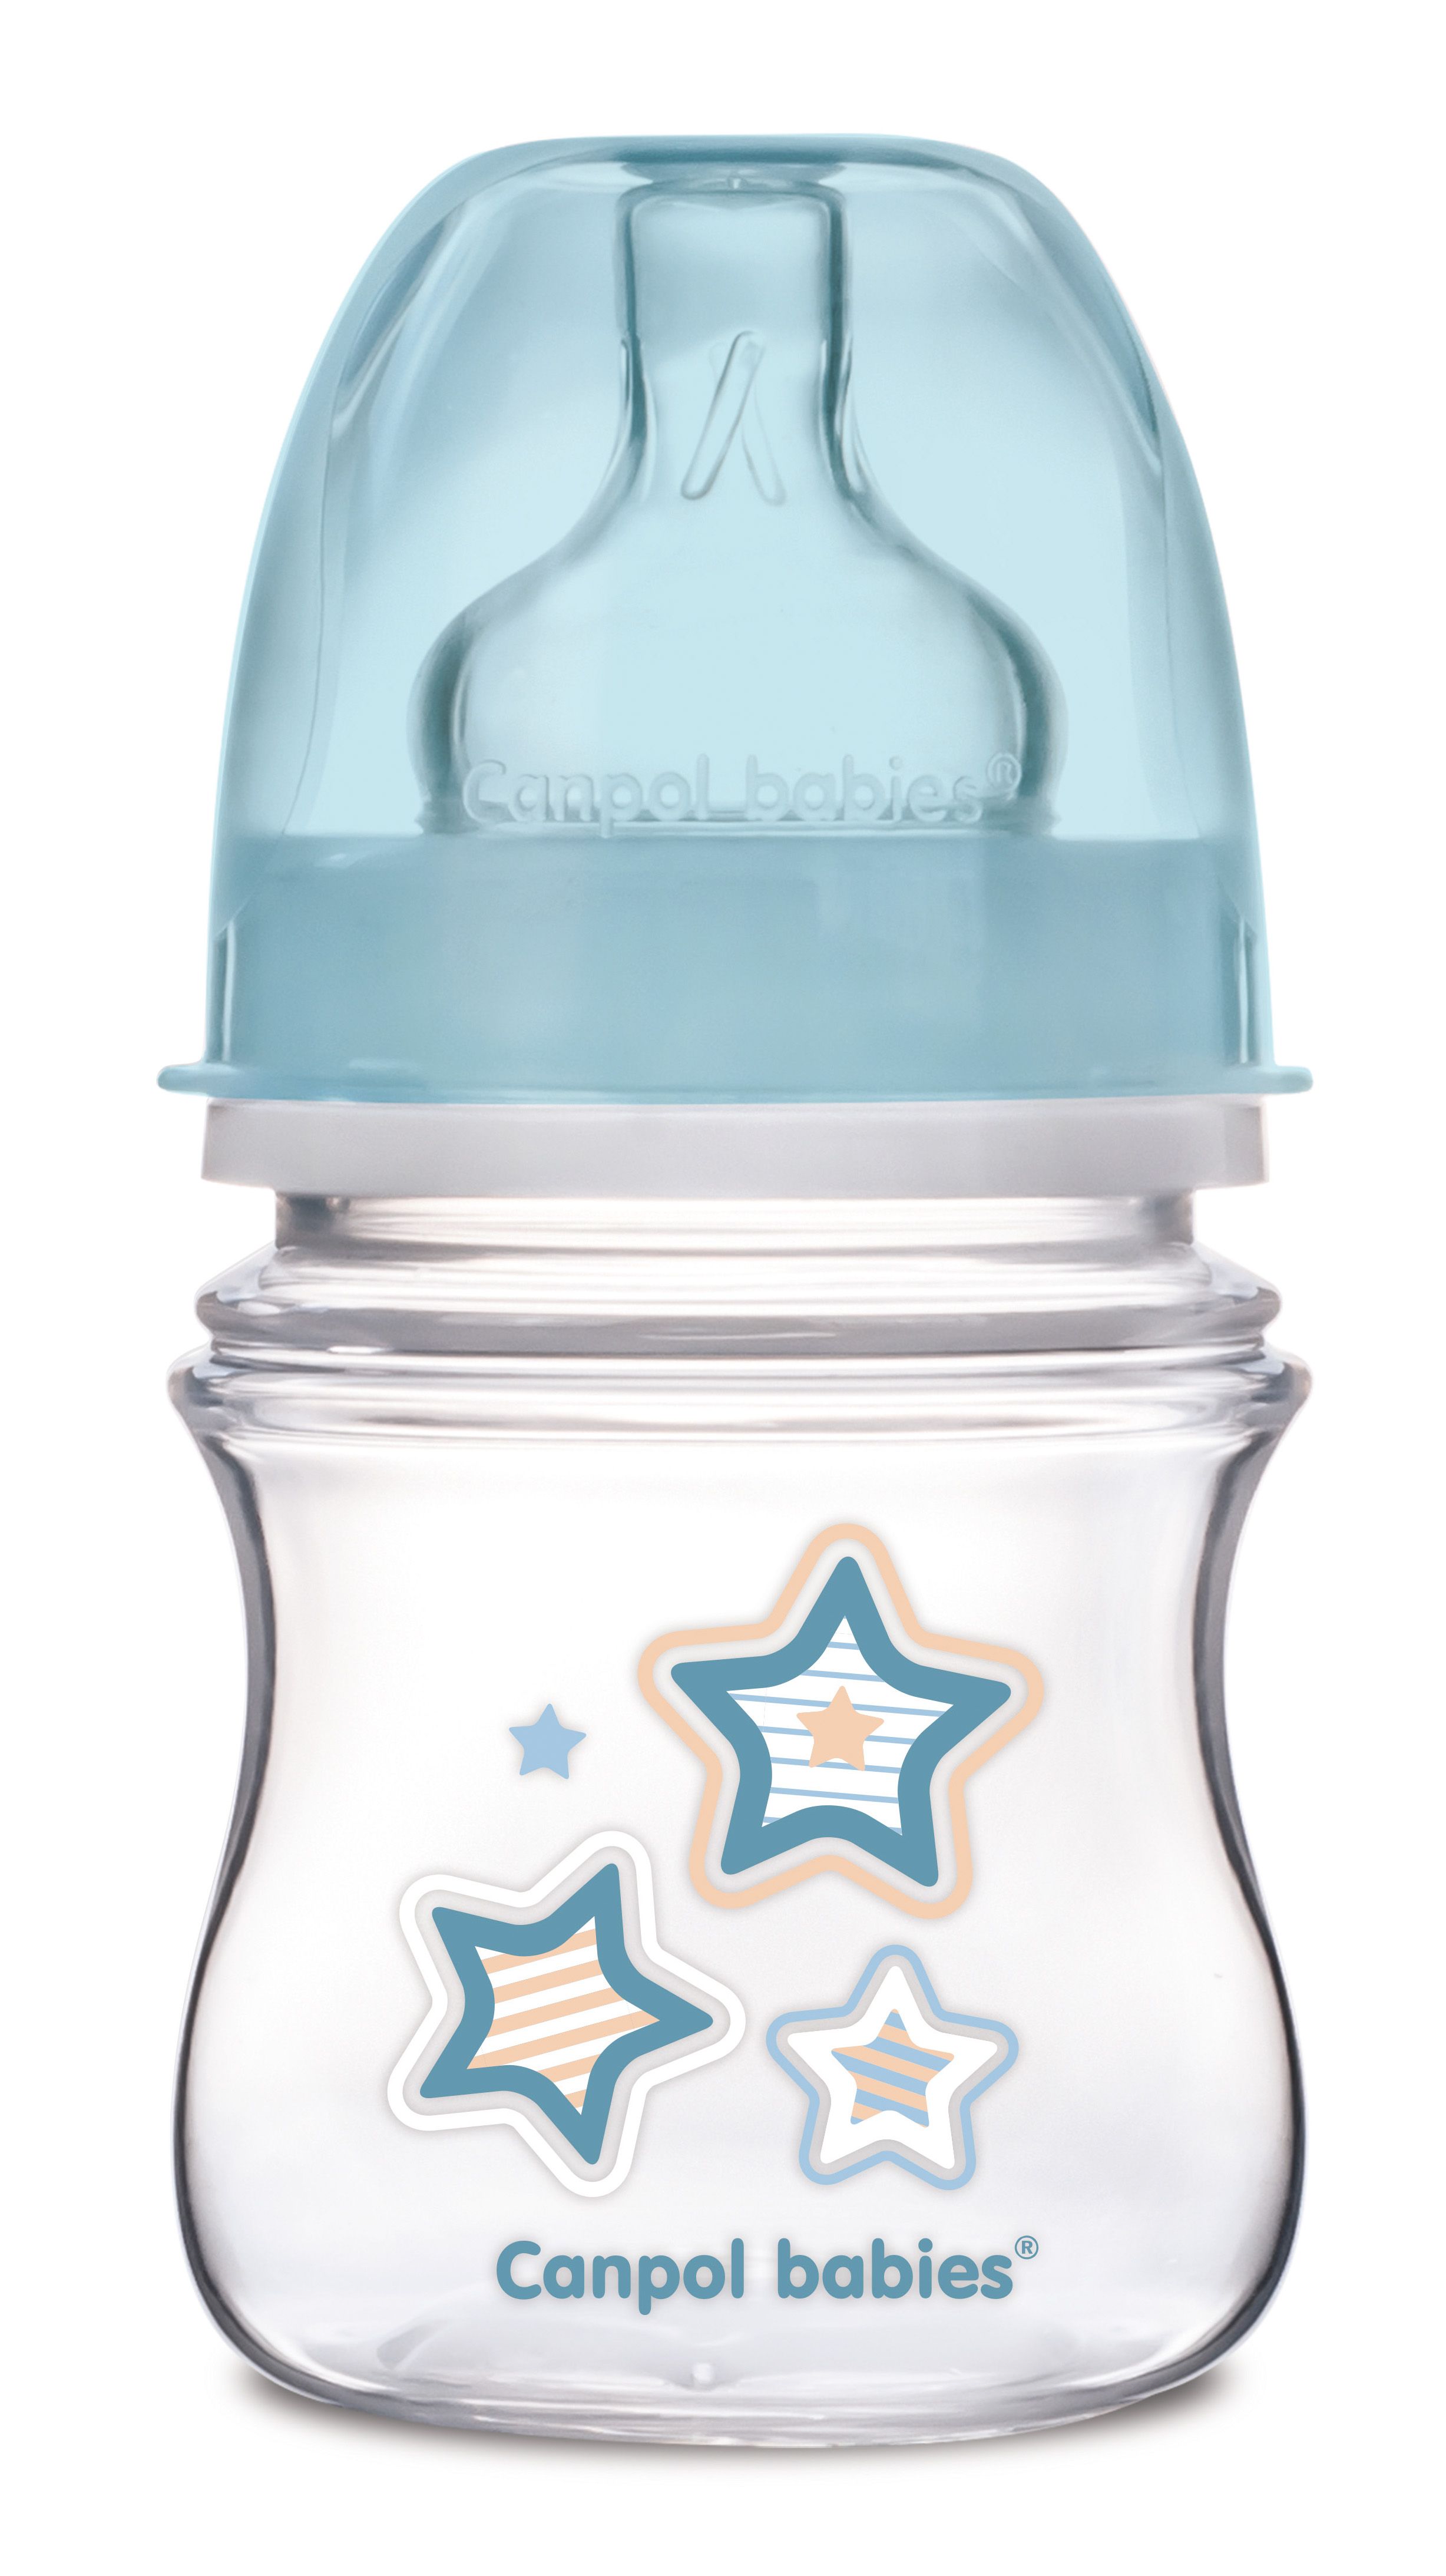 Антиколиковая бутылочка для кормления Canpol babies Easystart Newborn Baby, 120 мл, голубой (35/216_blu) - фото 1